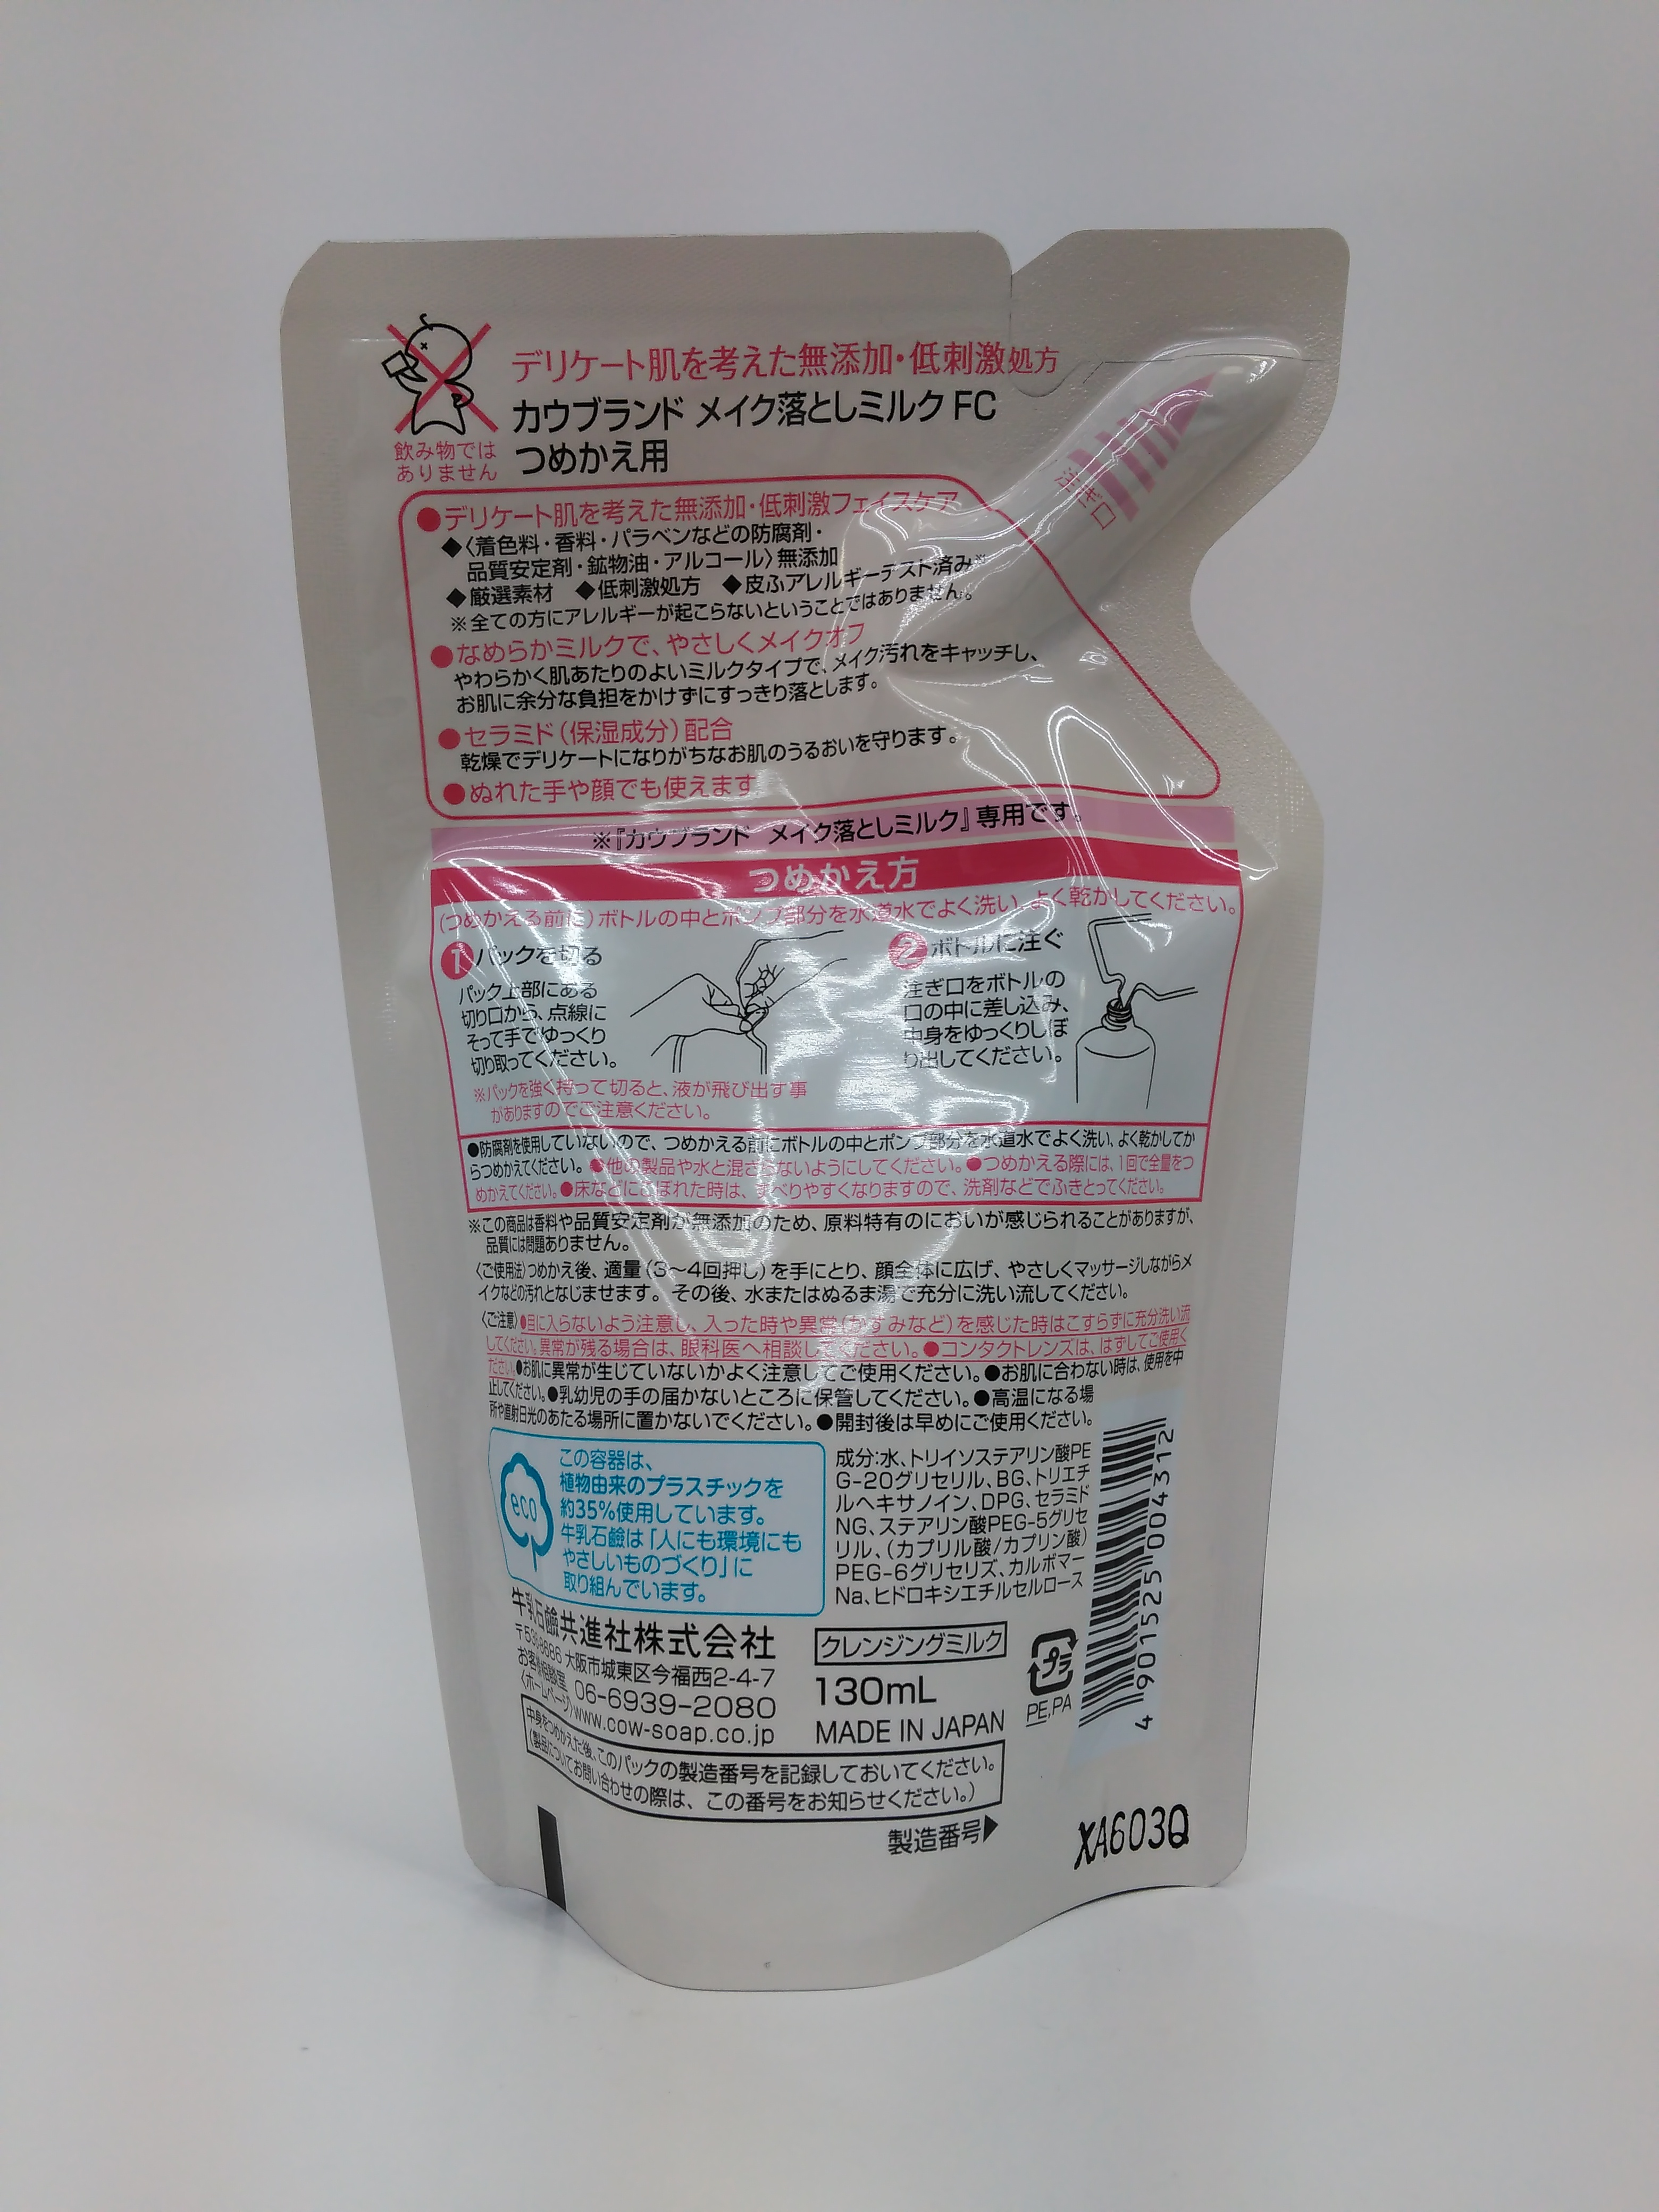 多慶屋公式サイト / 牛乳石鹸 ｶｳﾌﾞﾗﾝﾄﾞ 無添加メイク落としミルク 詰替用 130ml